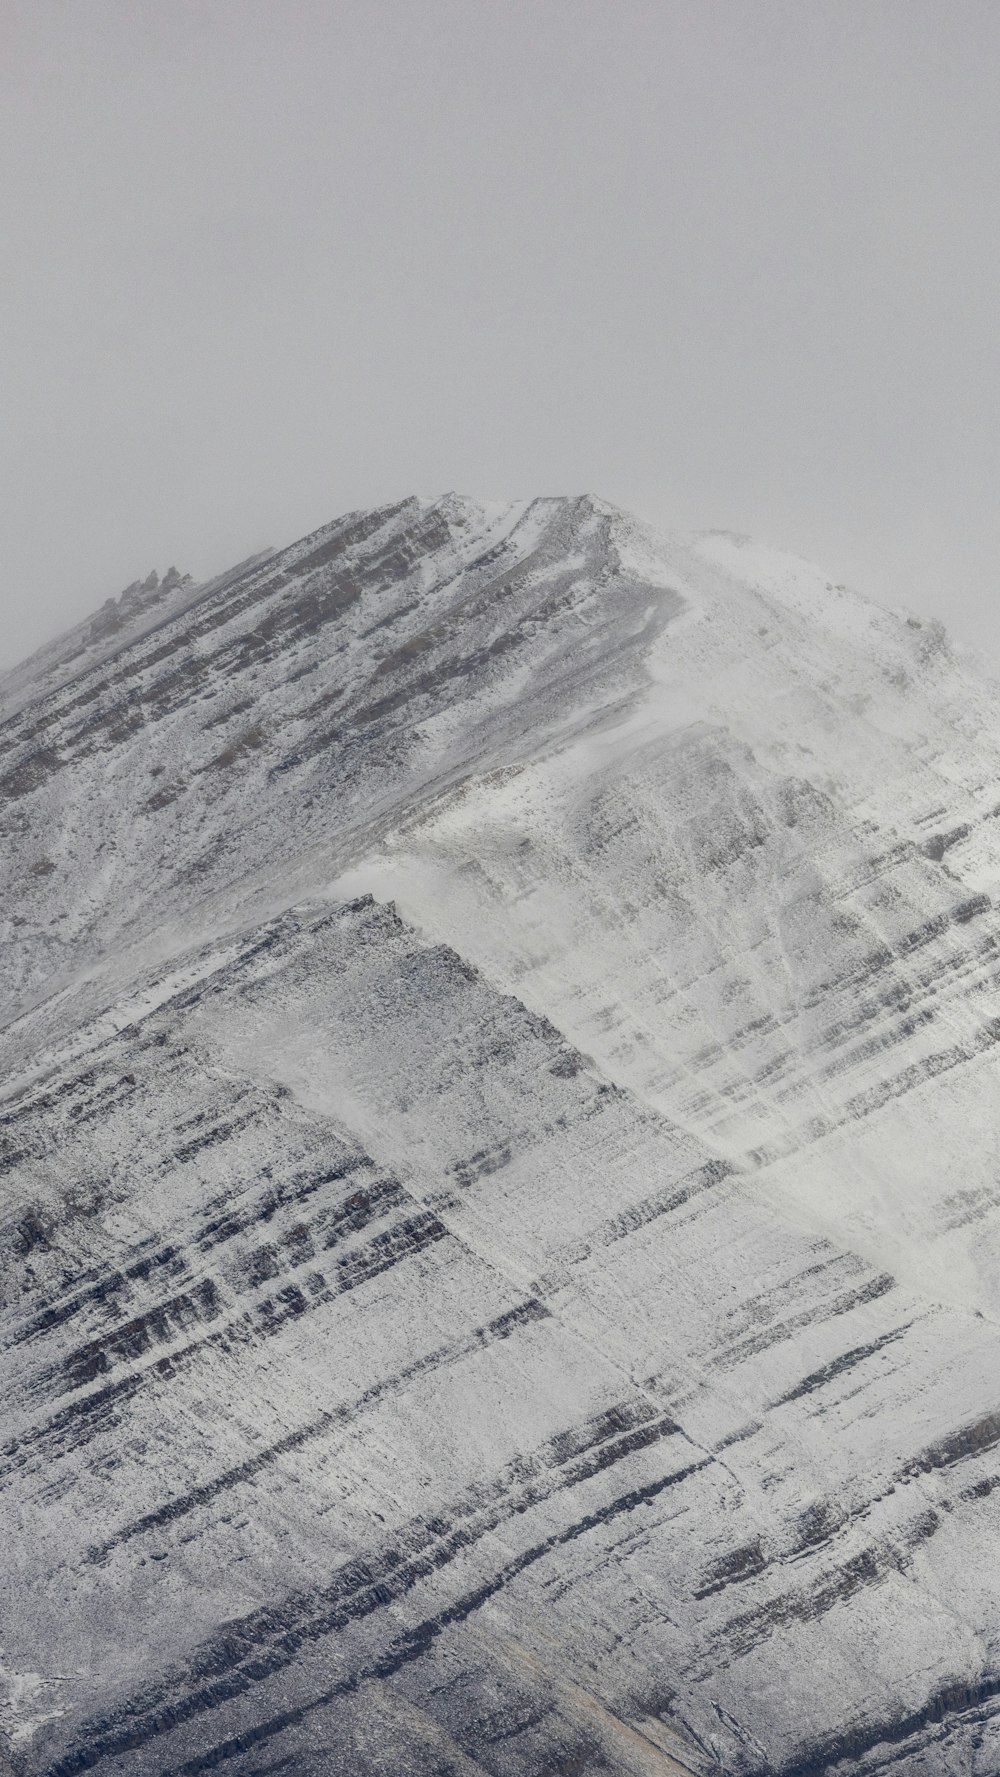 Ein schneebedeckter Berg mit einem Snowboarder im Vordergrund